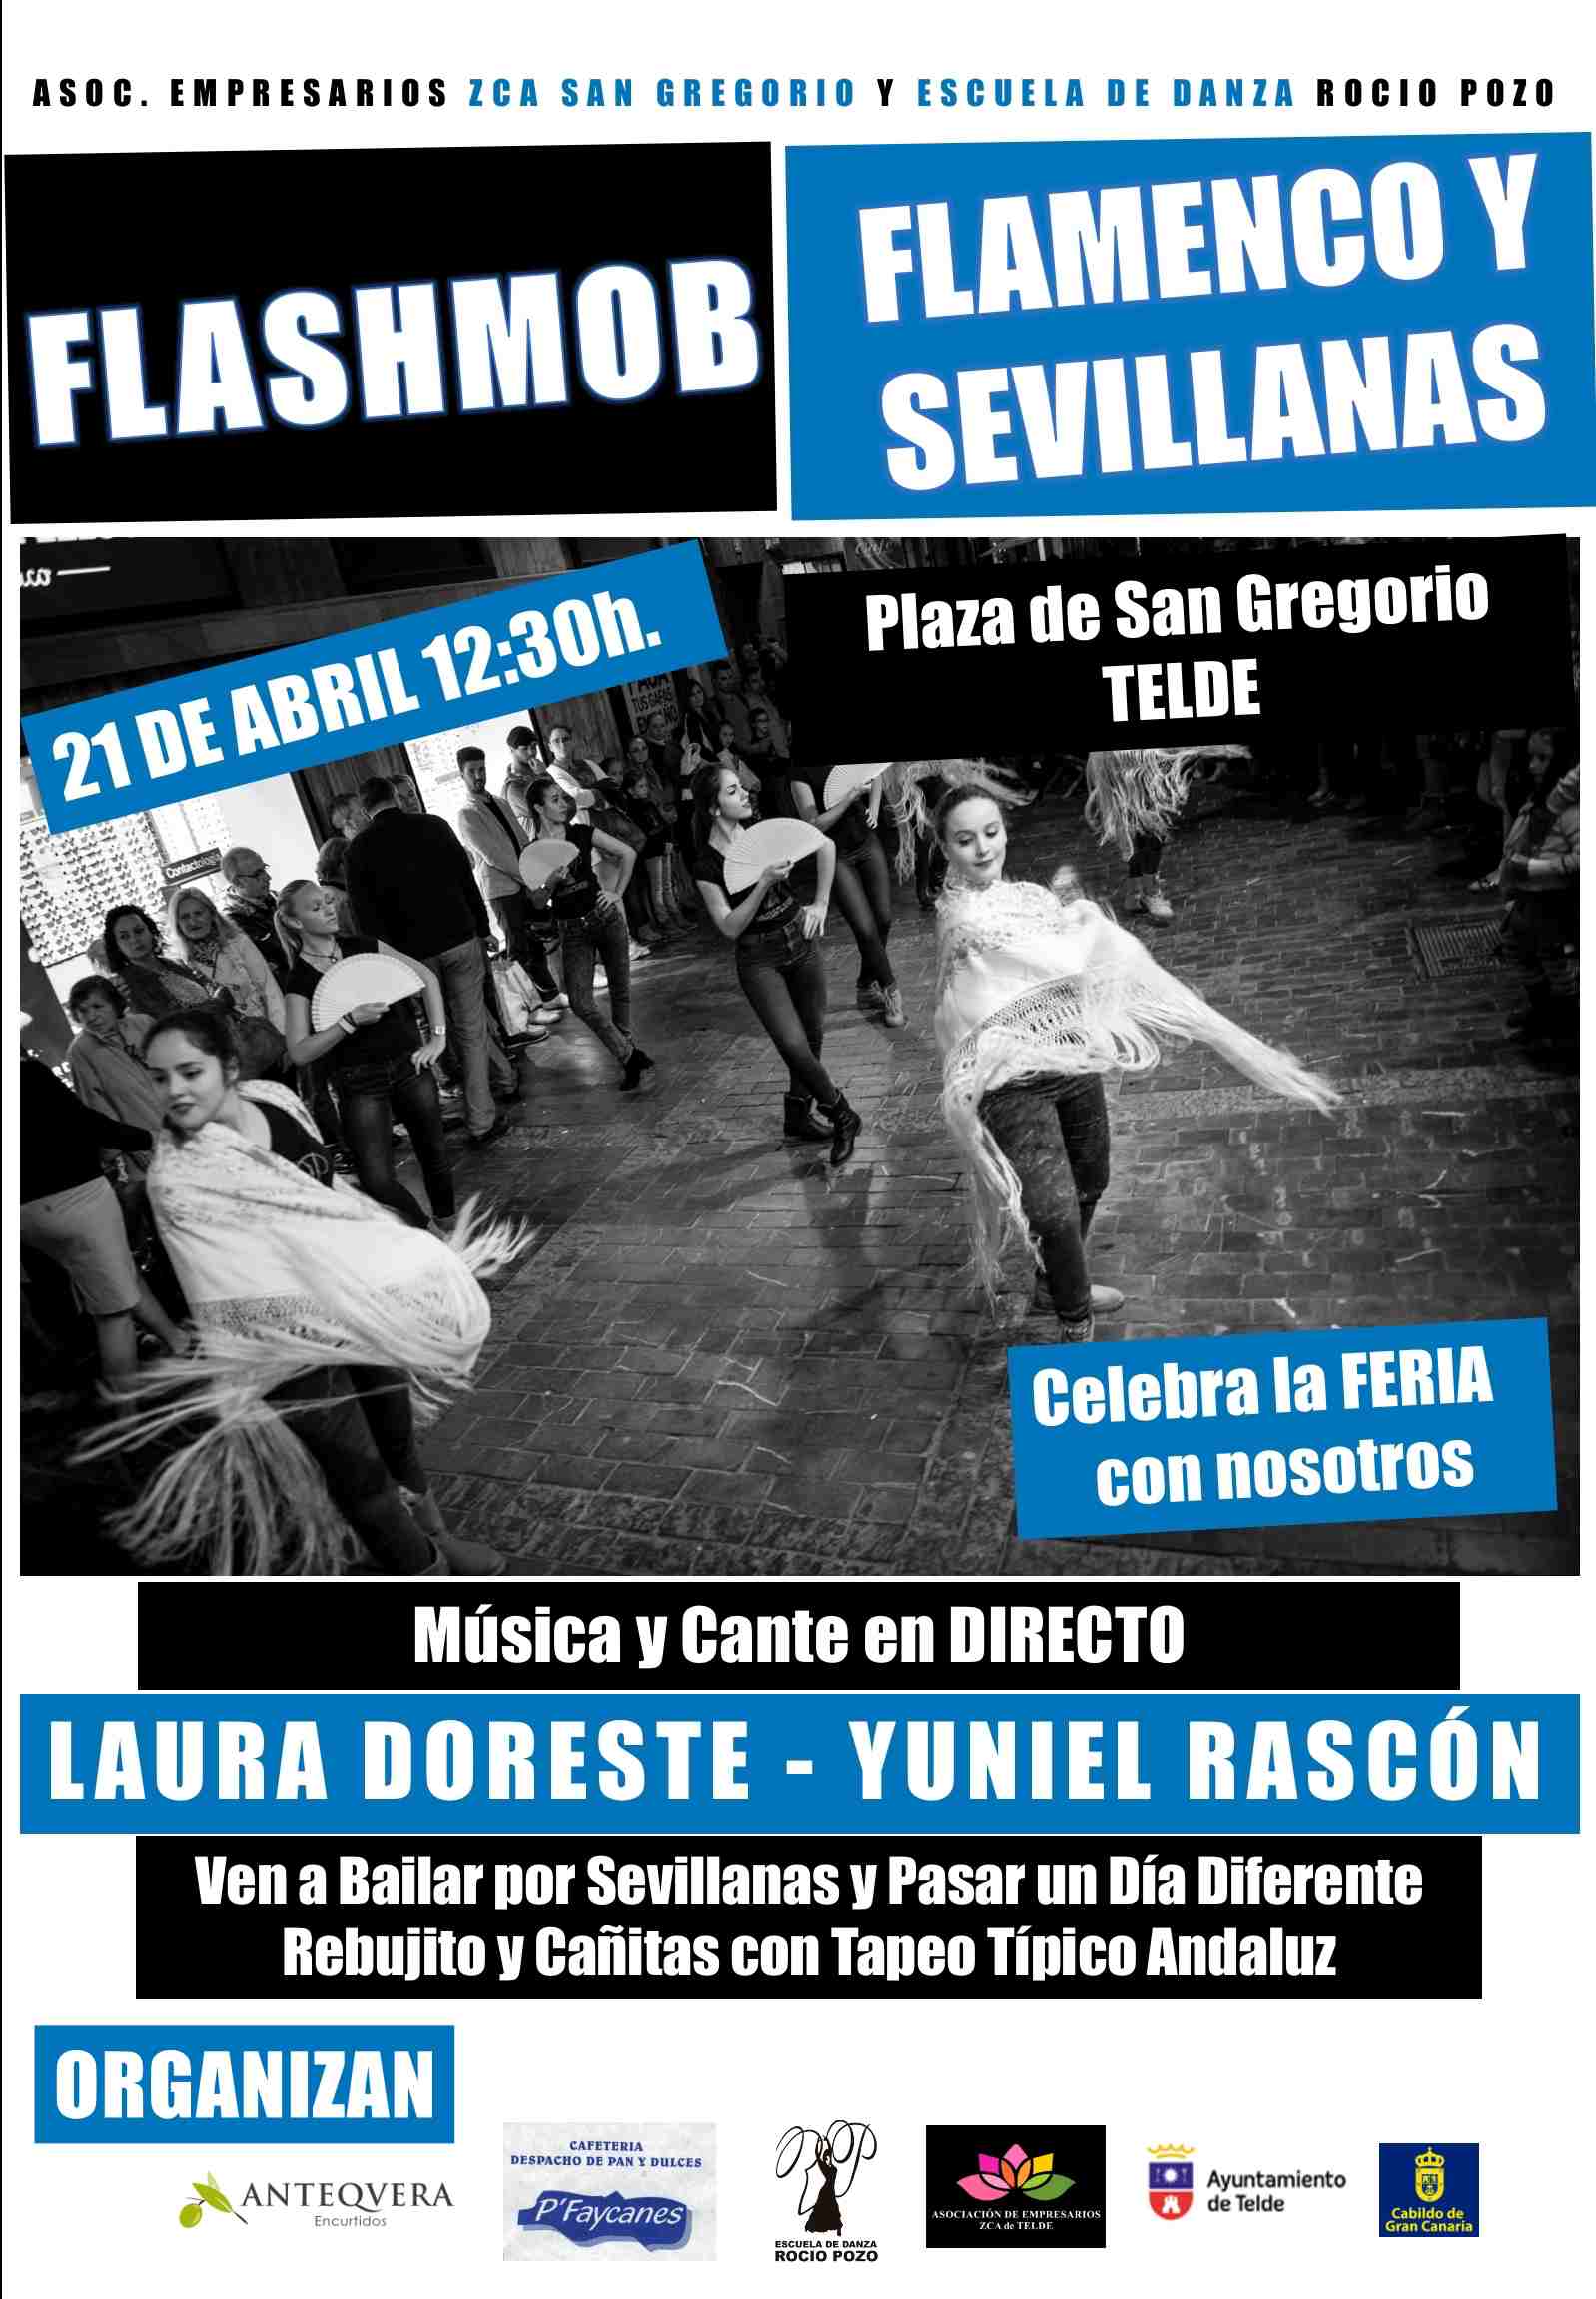 FlashMob Flamenco en Plaza San Gregorio de Telde – Organizado con Asociación Comerciantes ZCA San Gregorio